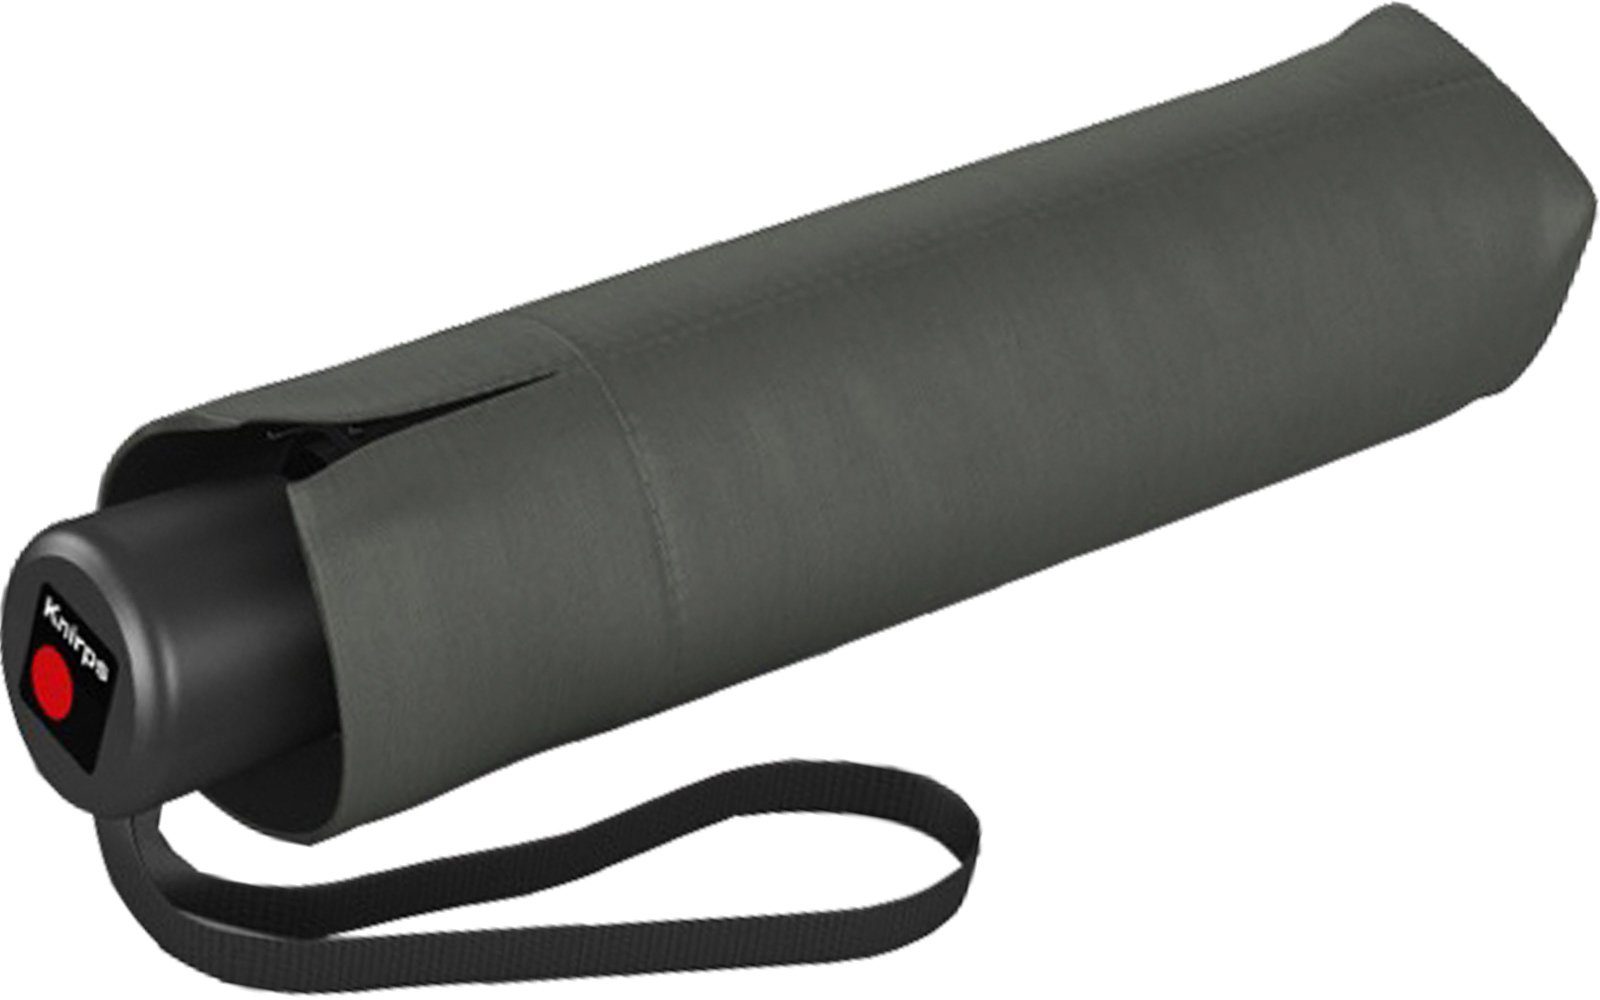 Knirps® Taschenregenschirm und leicht Manual, Medium A.050 grau stabil